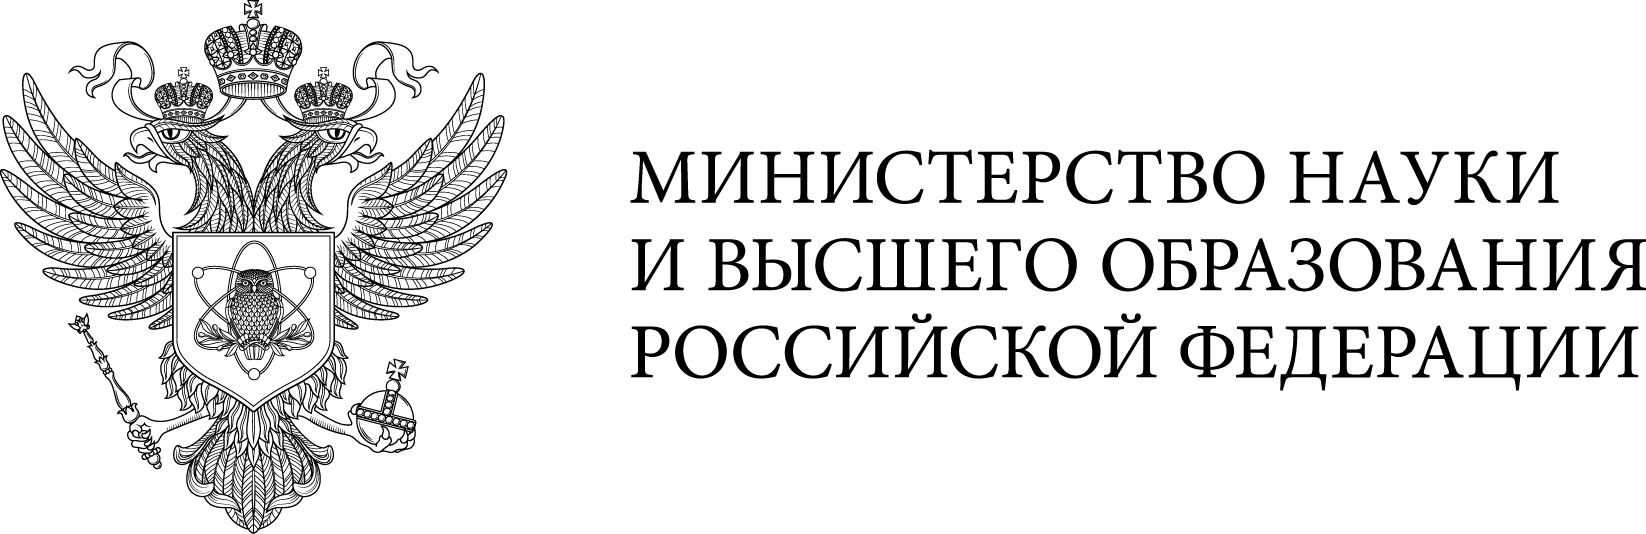 Министерство образования и науки российской федерации логотип прозрачный фон фото